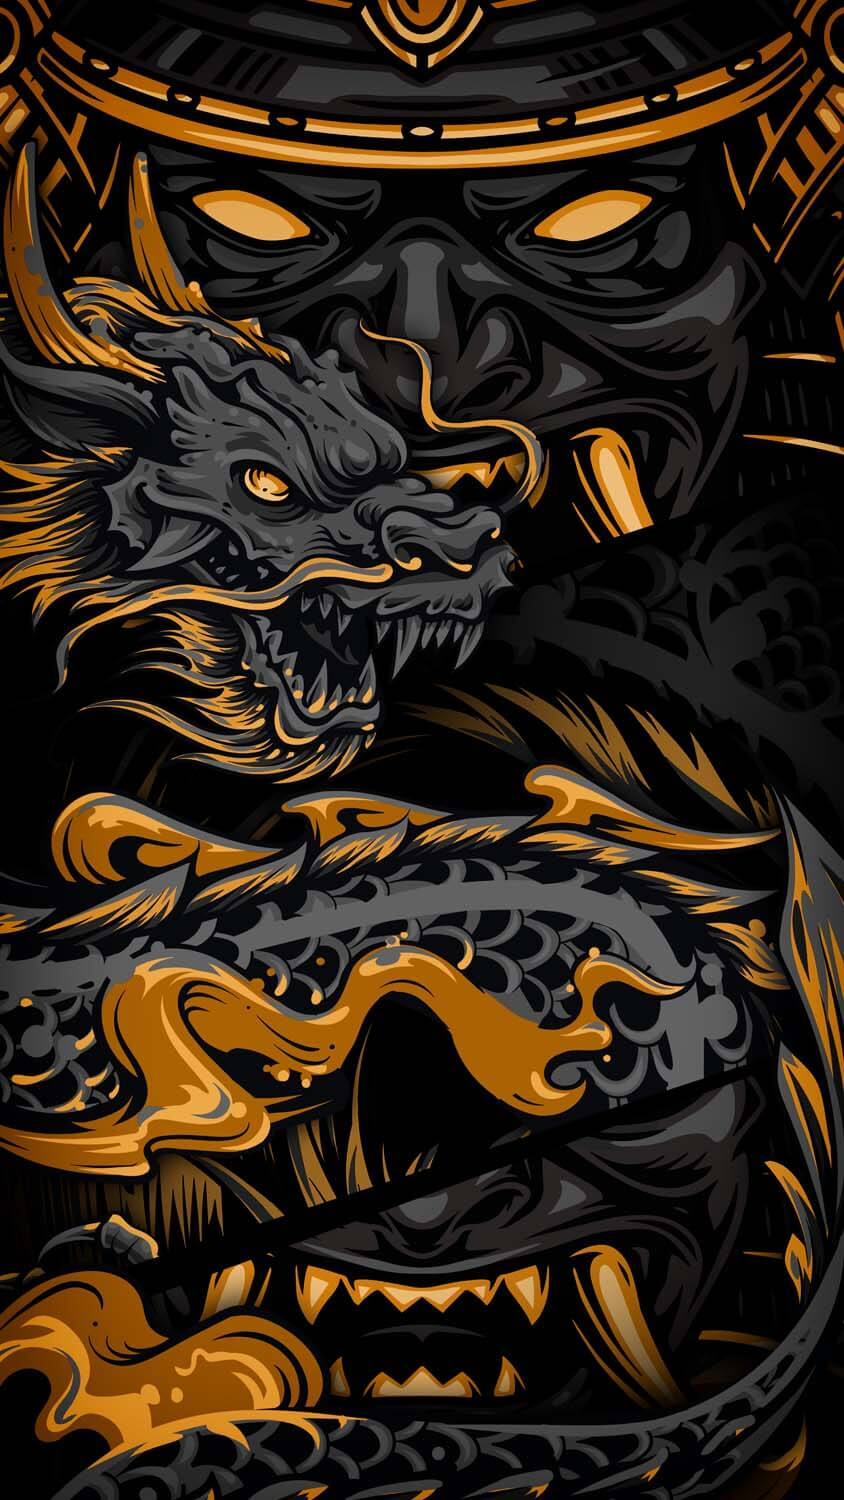 Samurai Vs Dragon IPhone Wallpaper HD  IPhone Wallpapers